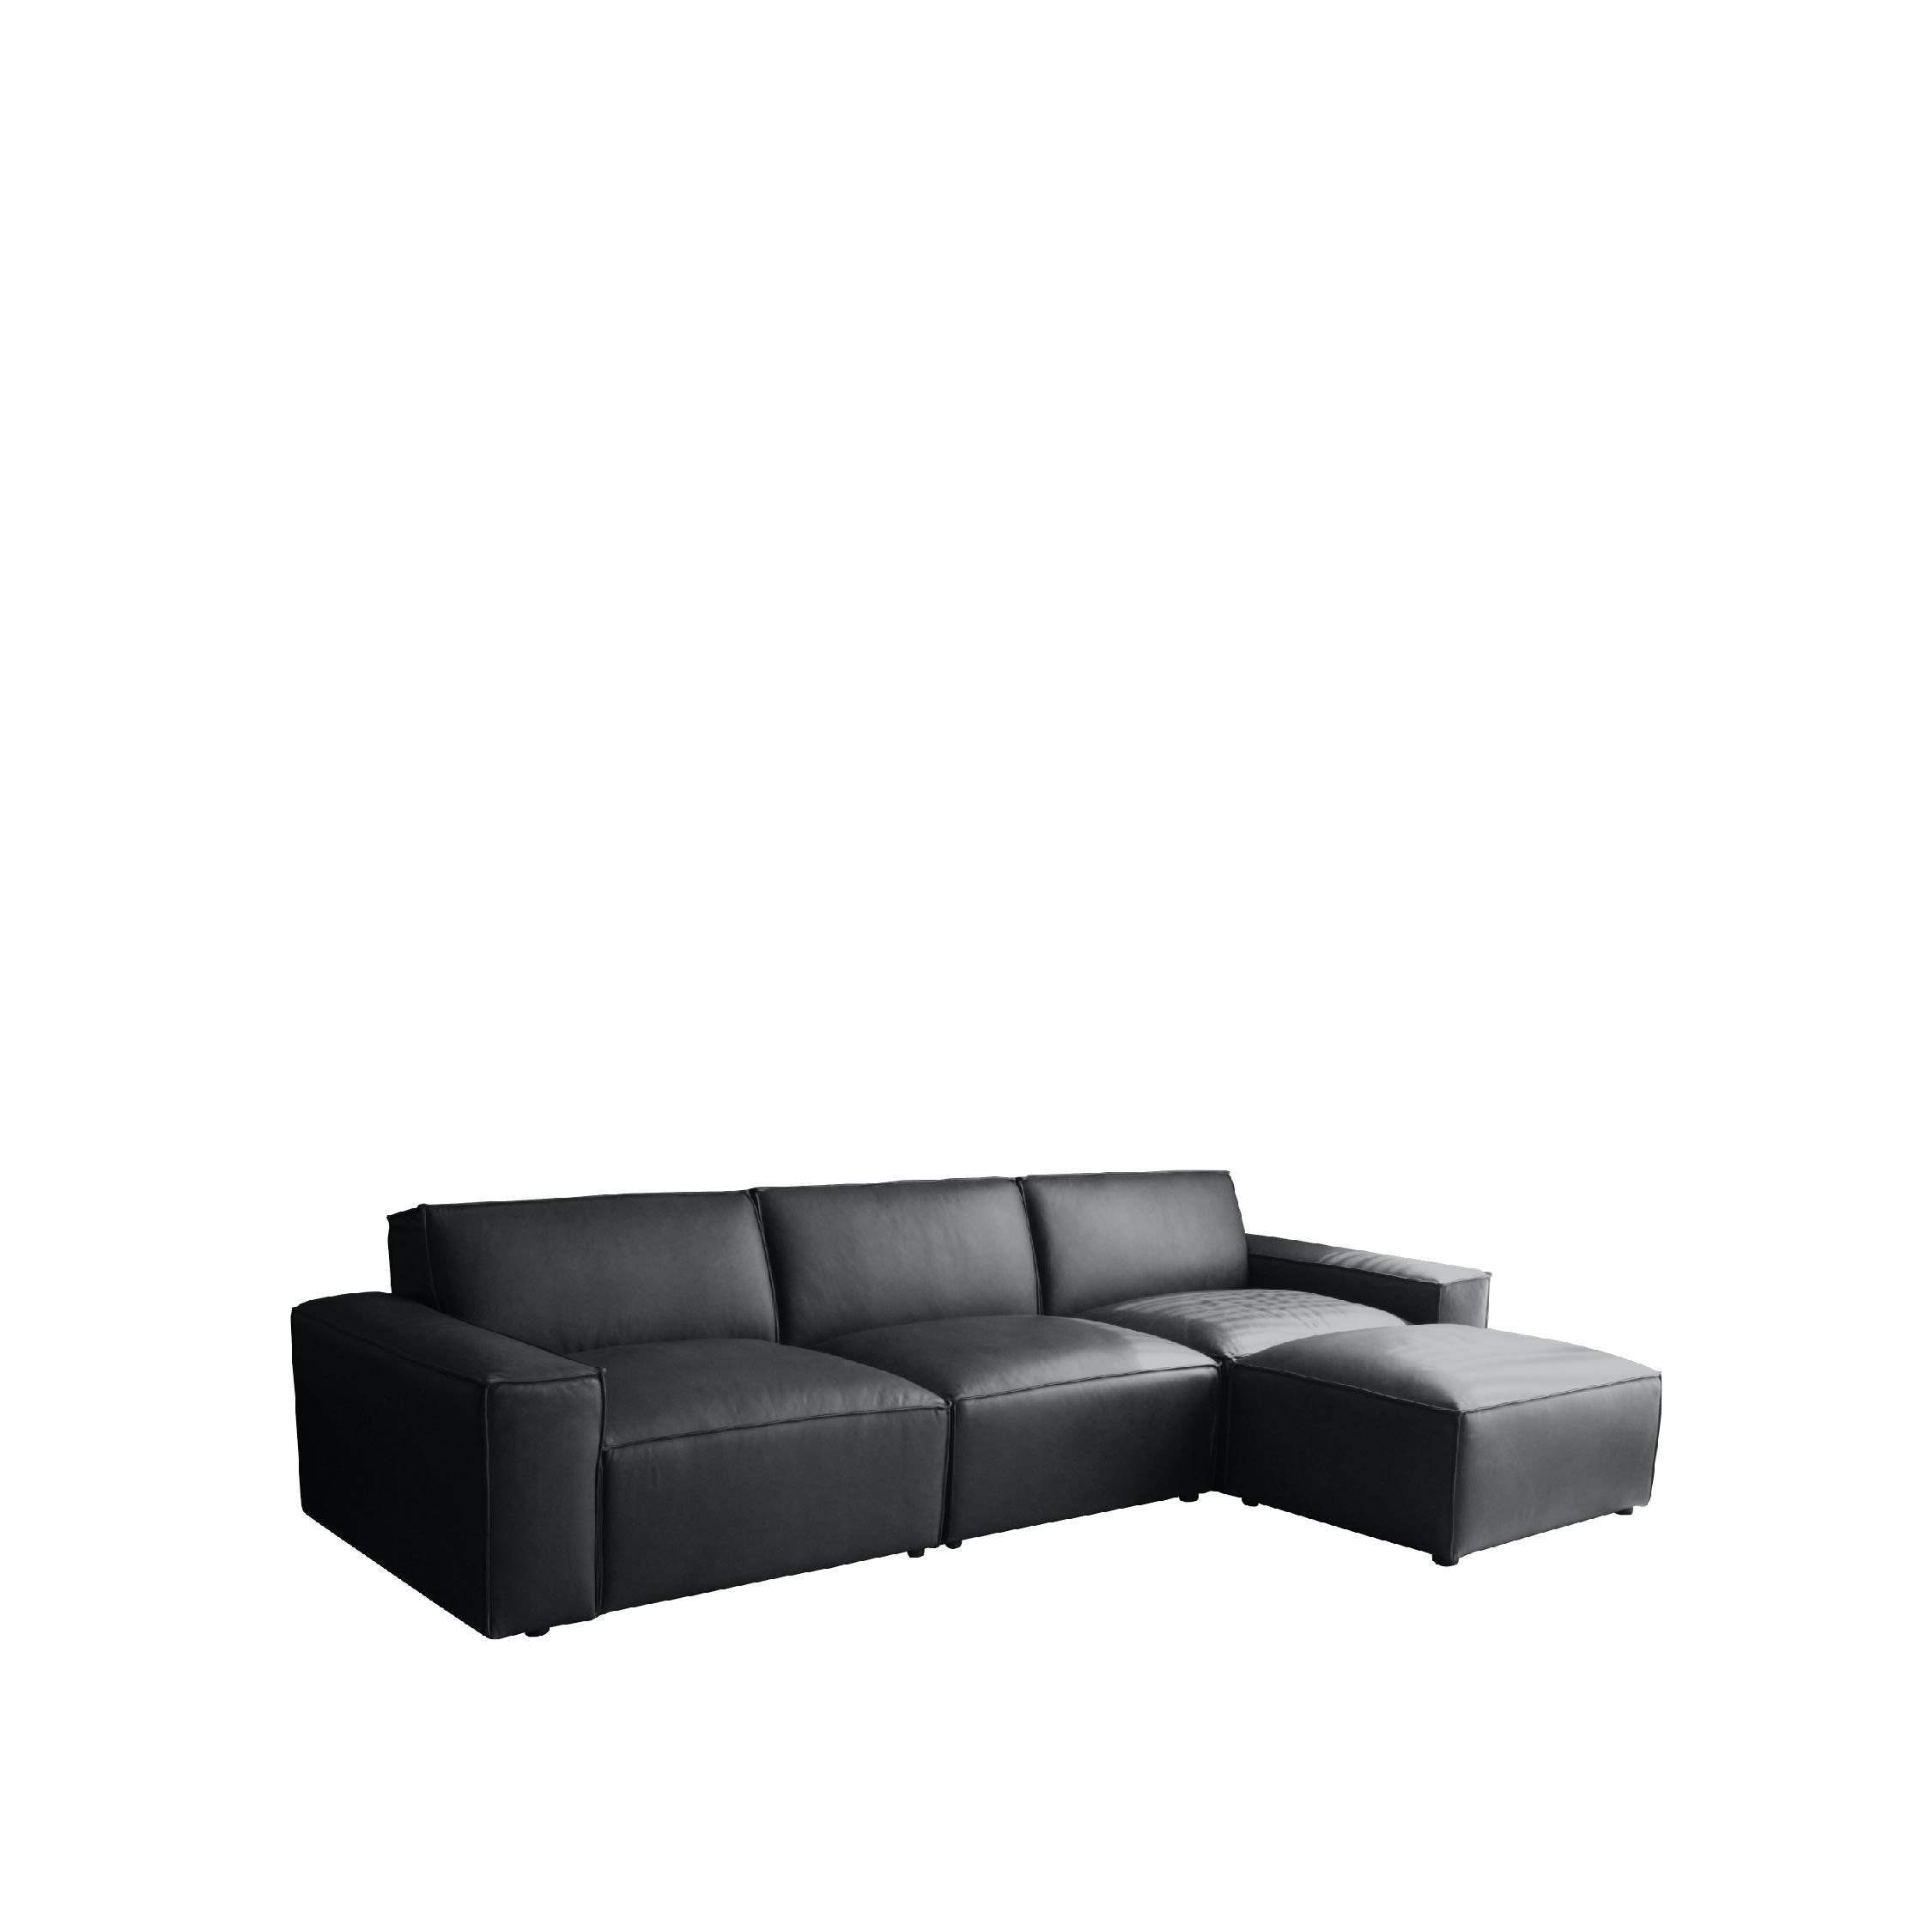 ESSIMETRI Sofa 4 Seater with Ottoman (Leather)